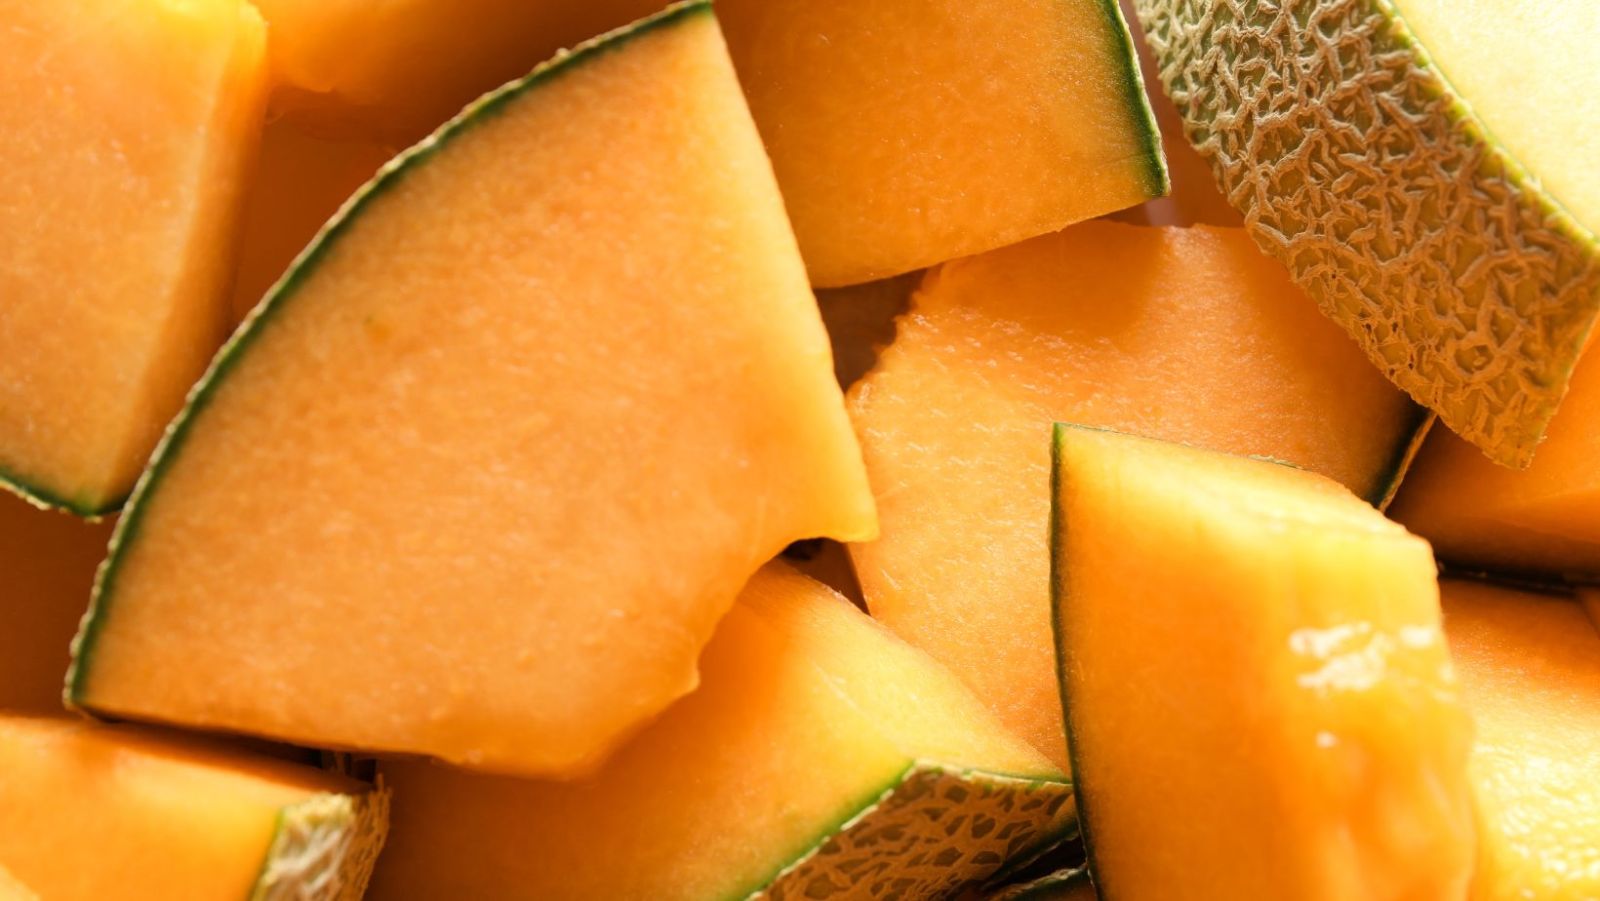 Comment reconnaître un melon fraîchement cueilli et gorgé de soleil ?